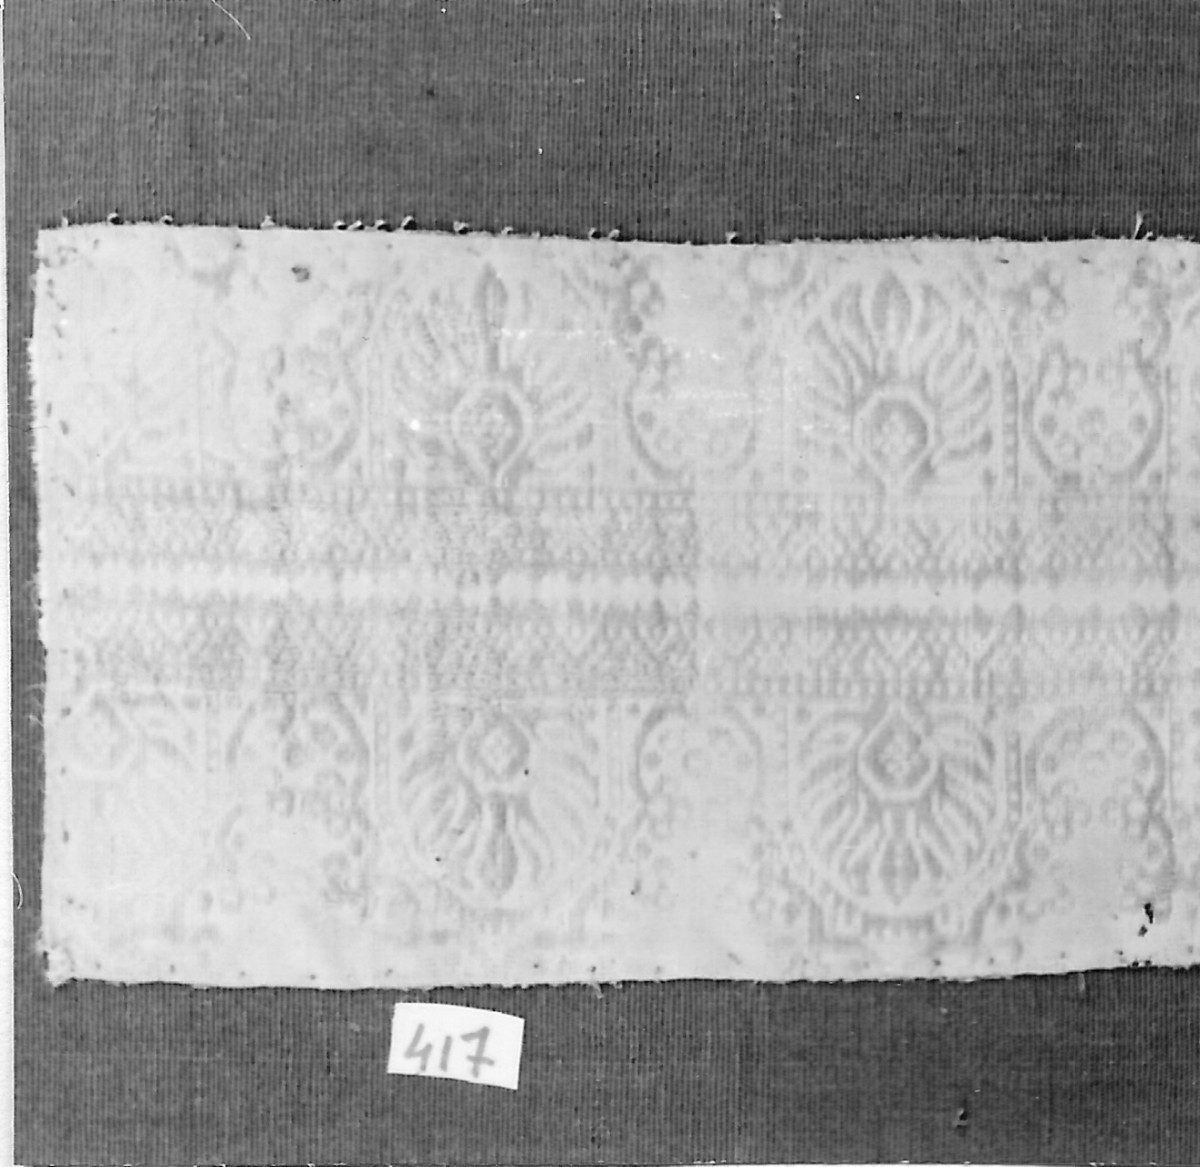 motivi decorativi vegetali (tessuto, frammento) - manifattura italiana (prima metà sec. XVII)